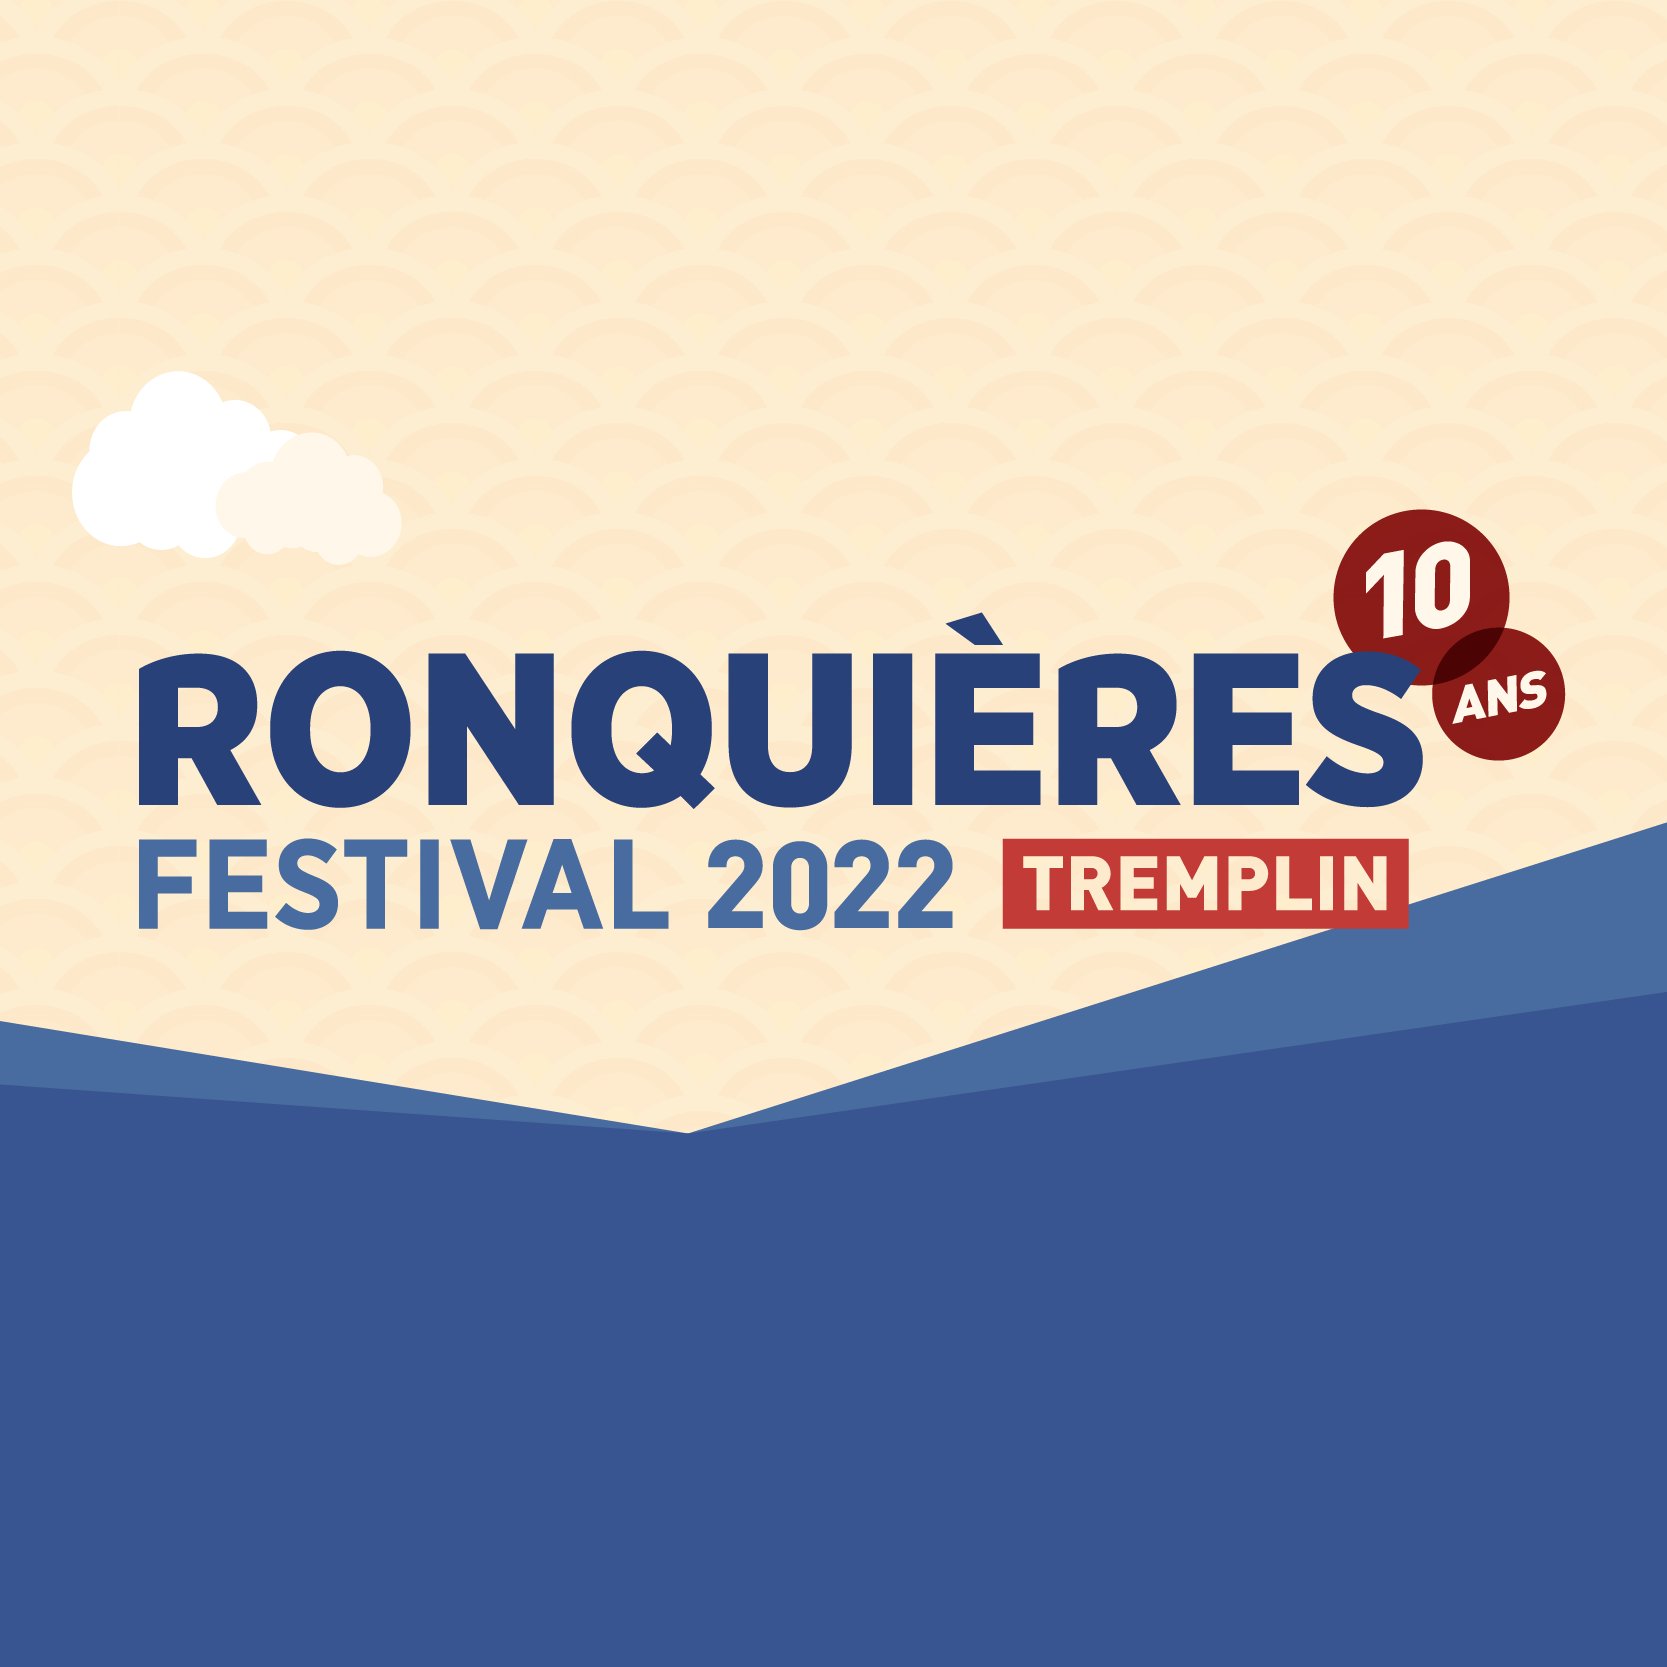 TREMPLIN RONQUIÈRES FESTIVAL 2022